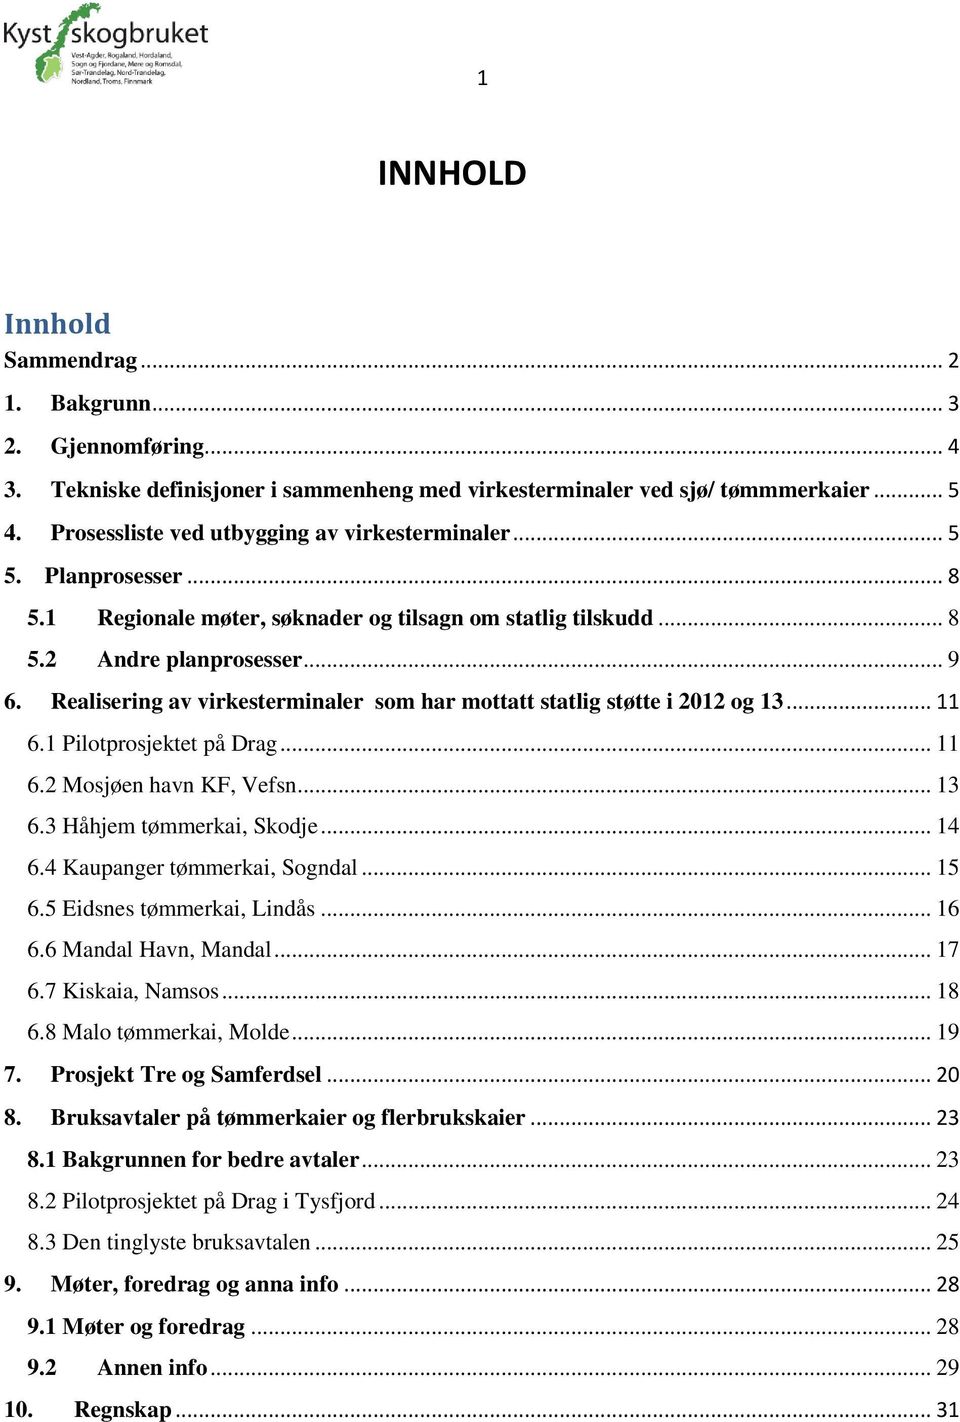 Realisering av virkesterminaler som har mottatt statlig støtte i 2012 og 13... 11 6.1 Pilotprosjektet på Drag... 11 6.2 Mosjøen havn KF, Vefsn... 13 6.3 Håhjem tømmerkai, Skodje... 14 6.